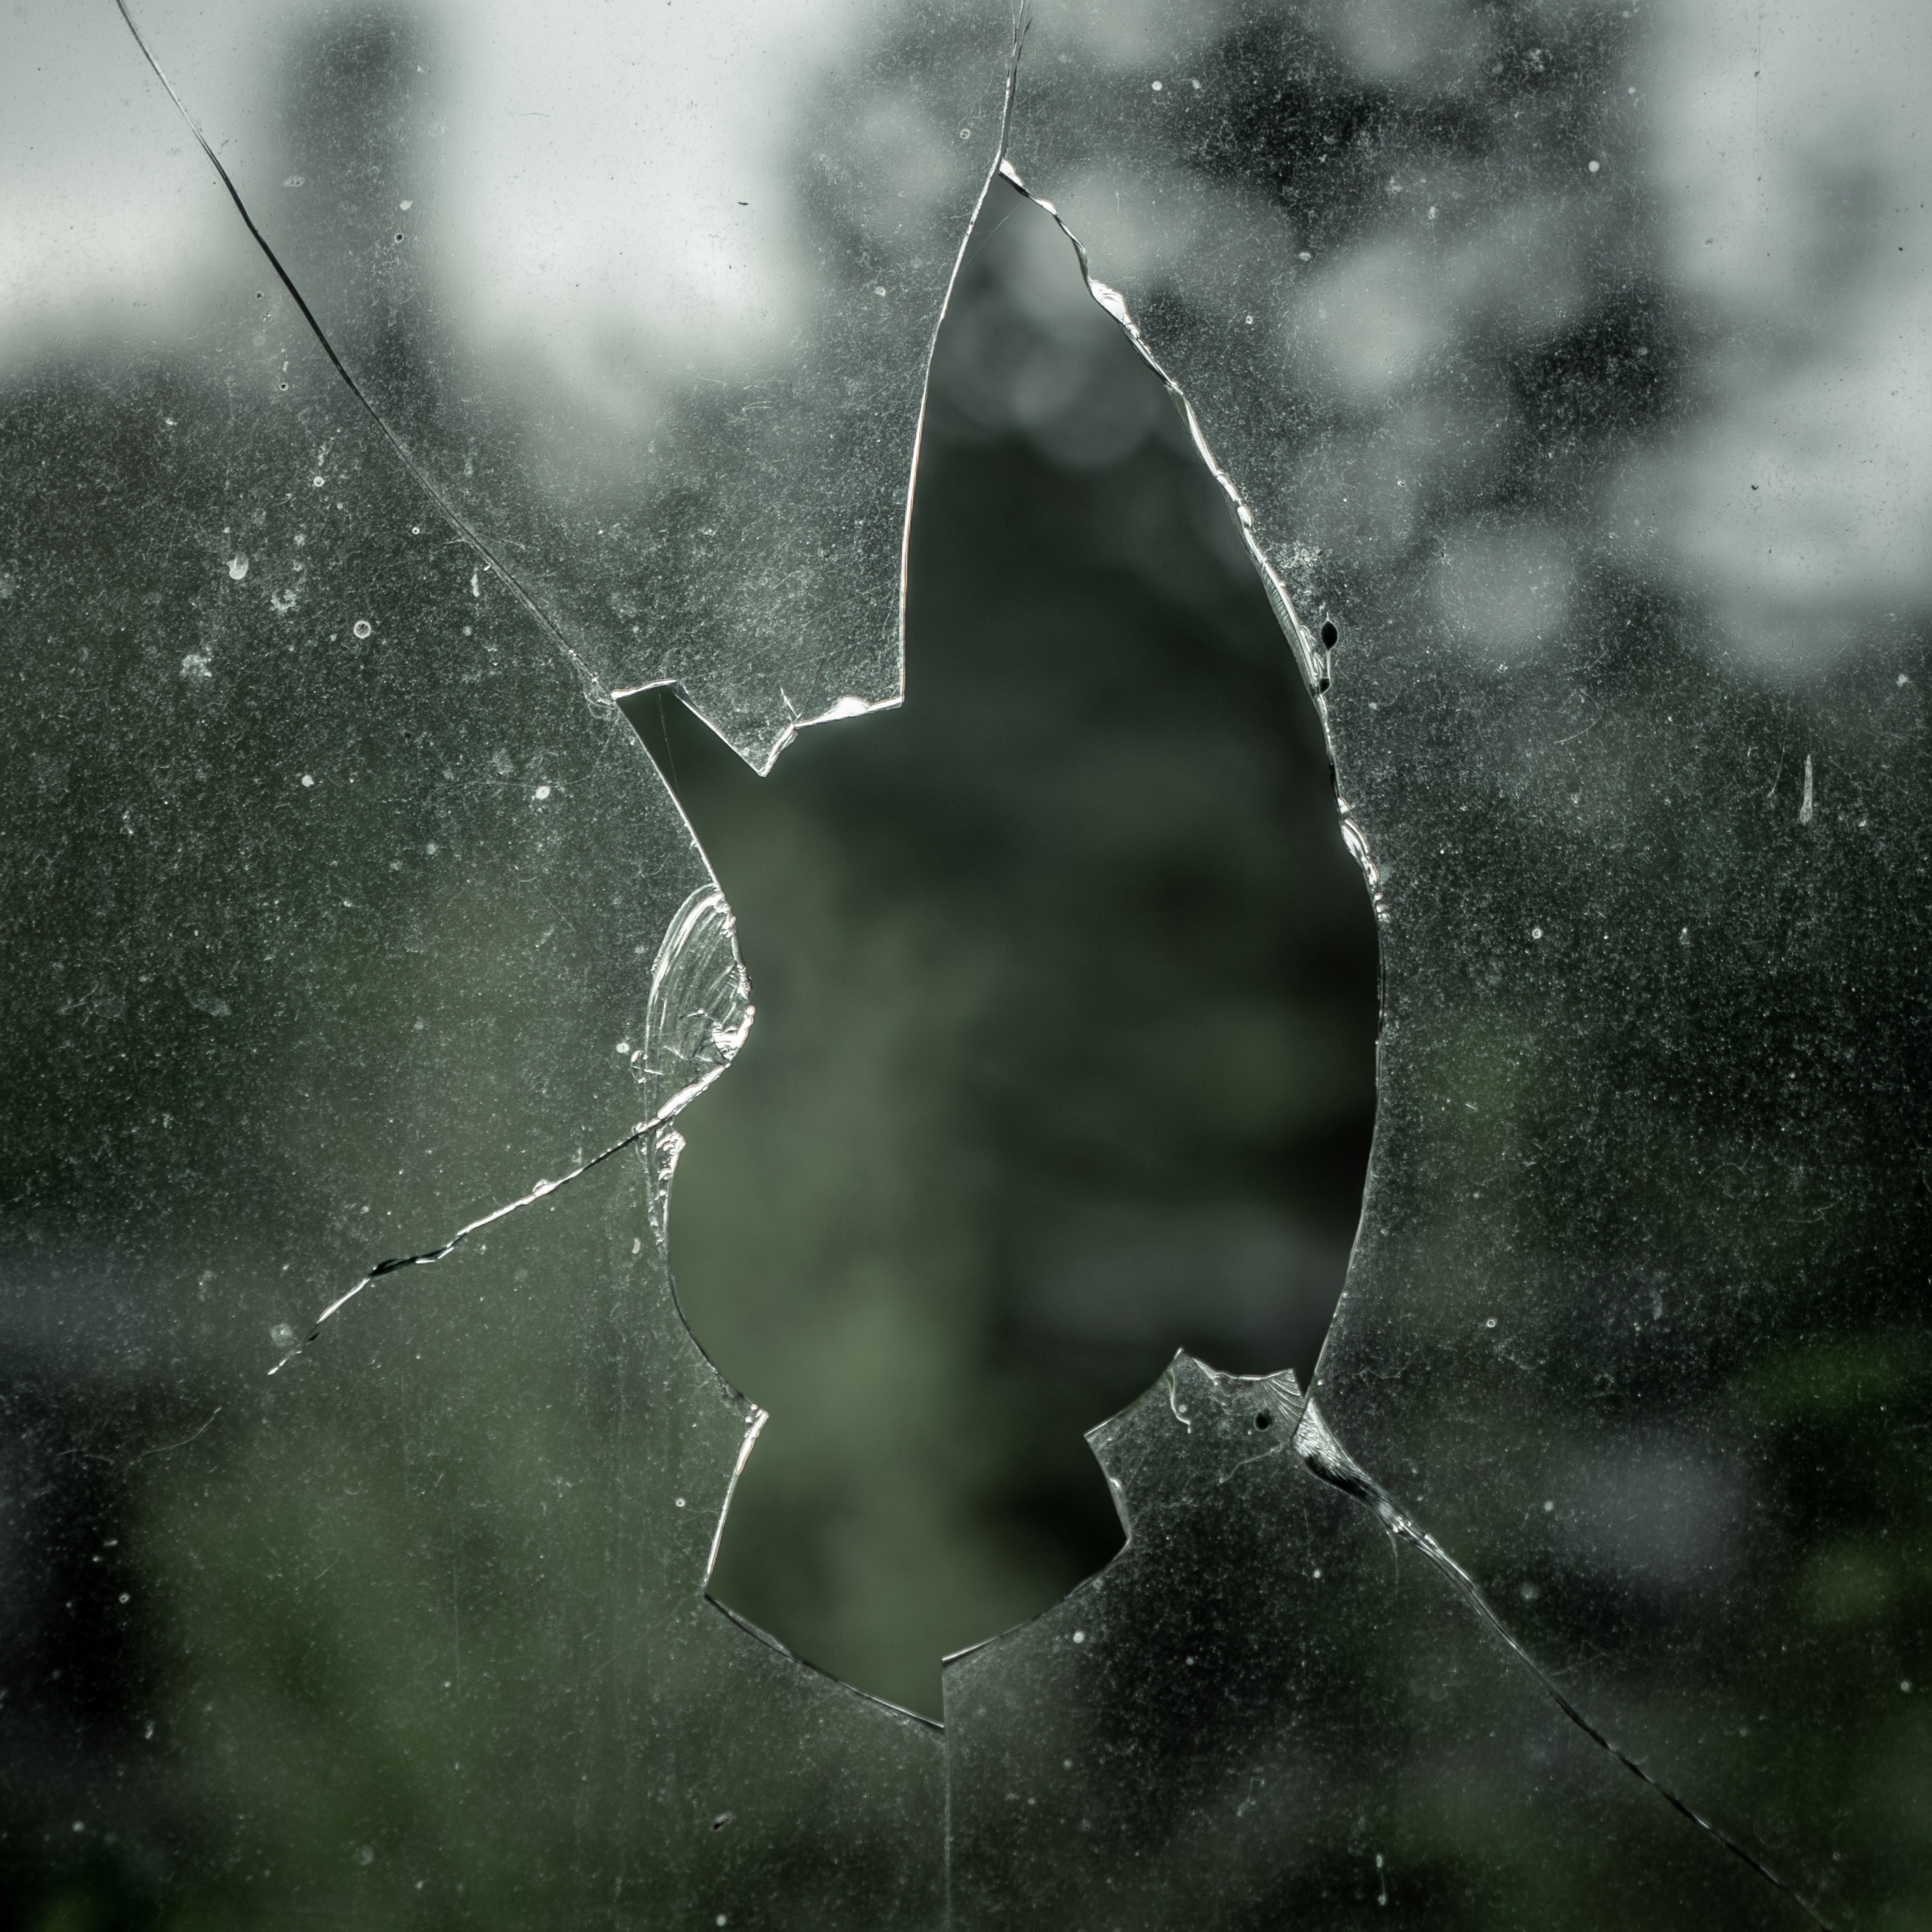 A panel of broken glass